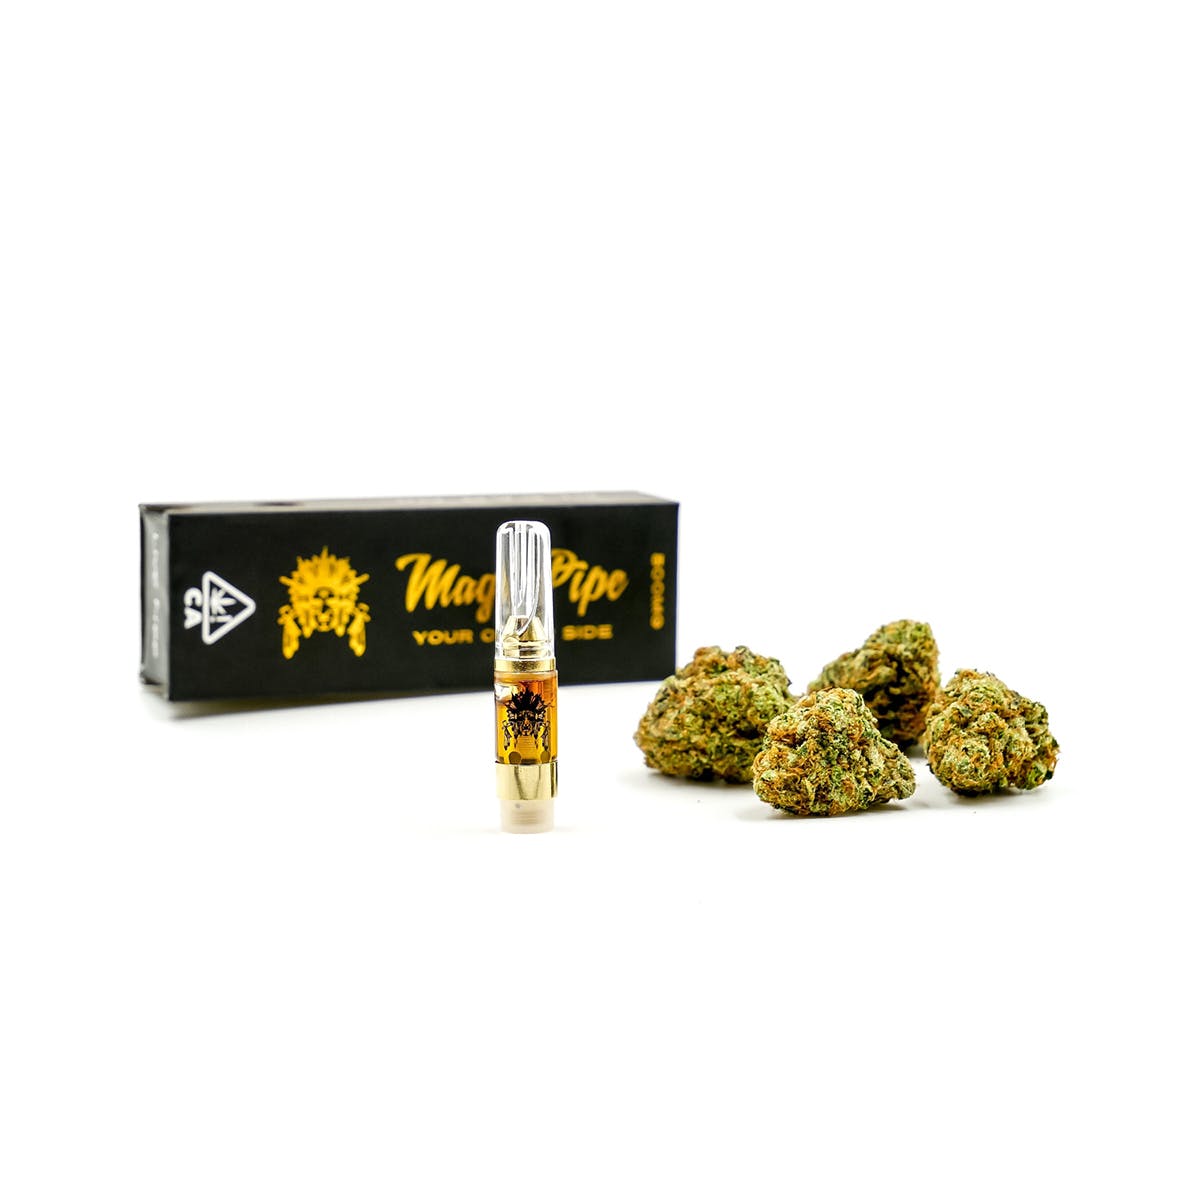 marijuana-dispensaries-kings-pre-ico-in-burbank-fire-og-premium-cartridge